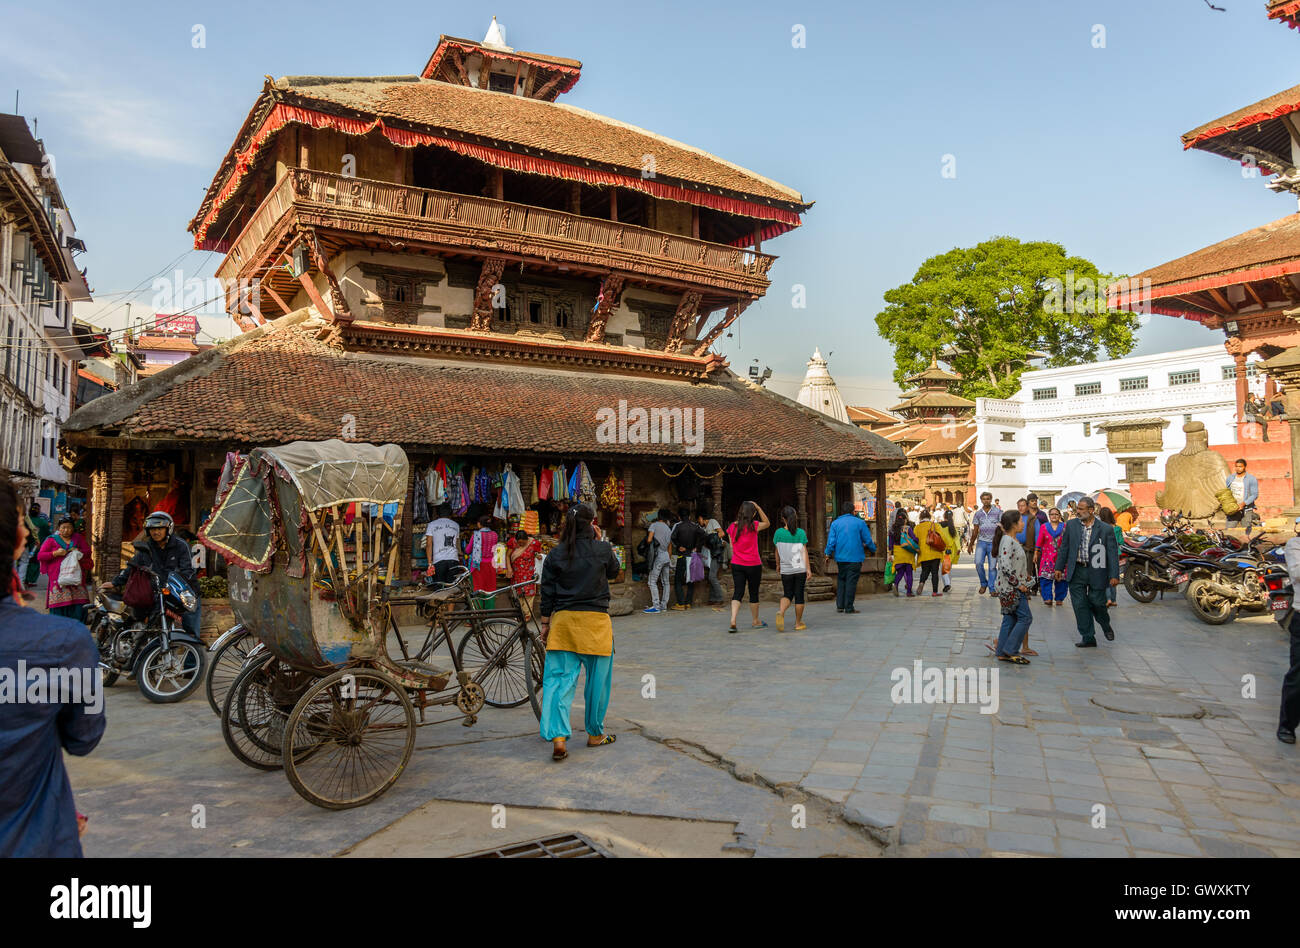 KATMANDOU, NÉPAL - VERS MARS 2014 : temple de Kasthamandap sur la place Durbar de Katmandou. Il a été détruit par le tremblement de terre de 2015 au Népal. Banque D'Images